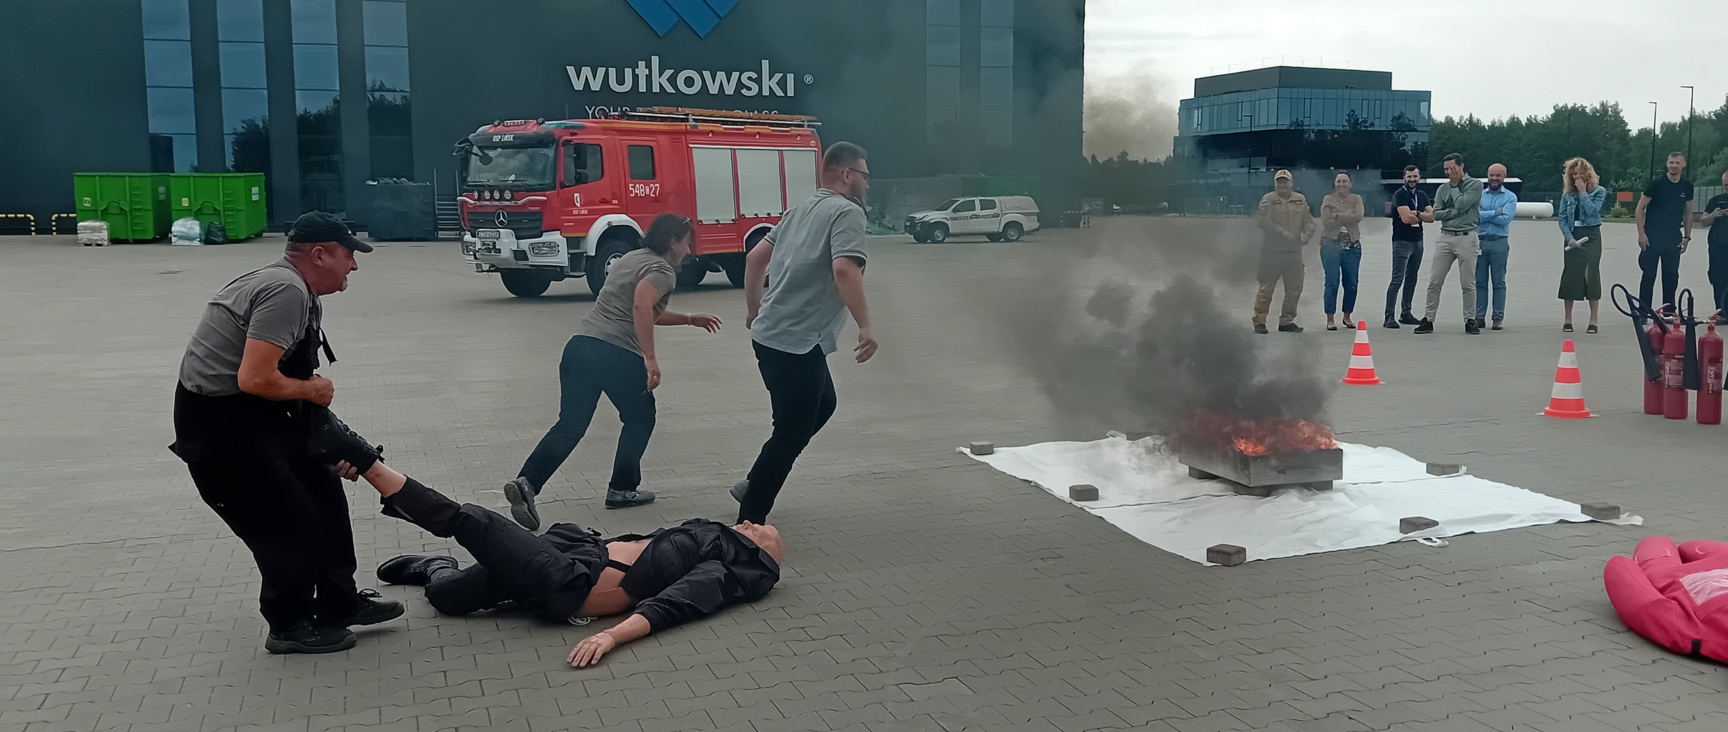 Ćwiczenia ewakuacyjne i ppoż - Wutkowski 022-min